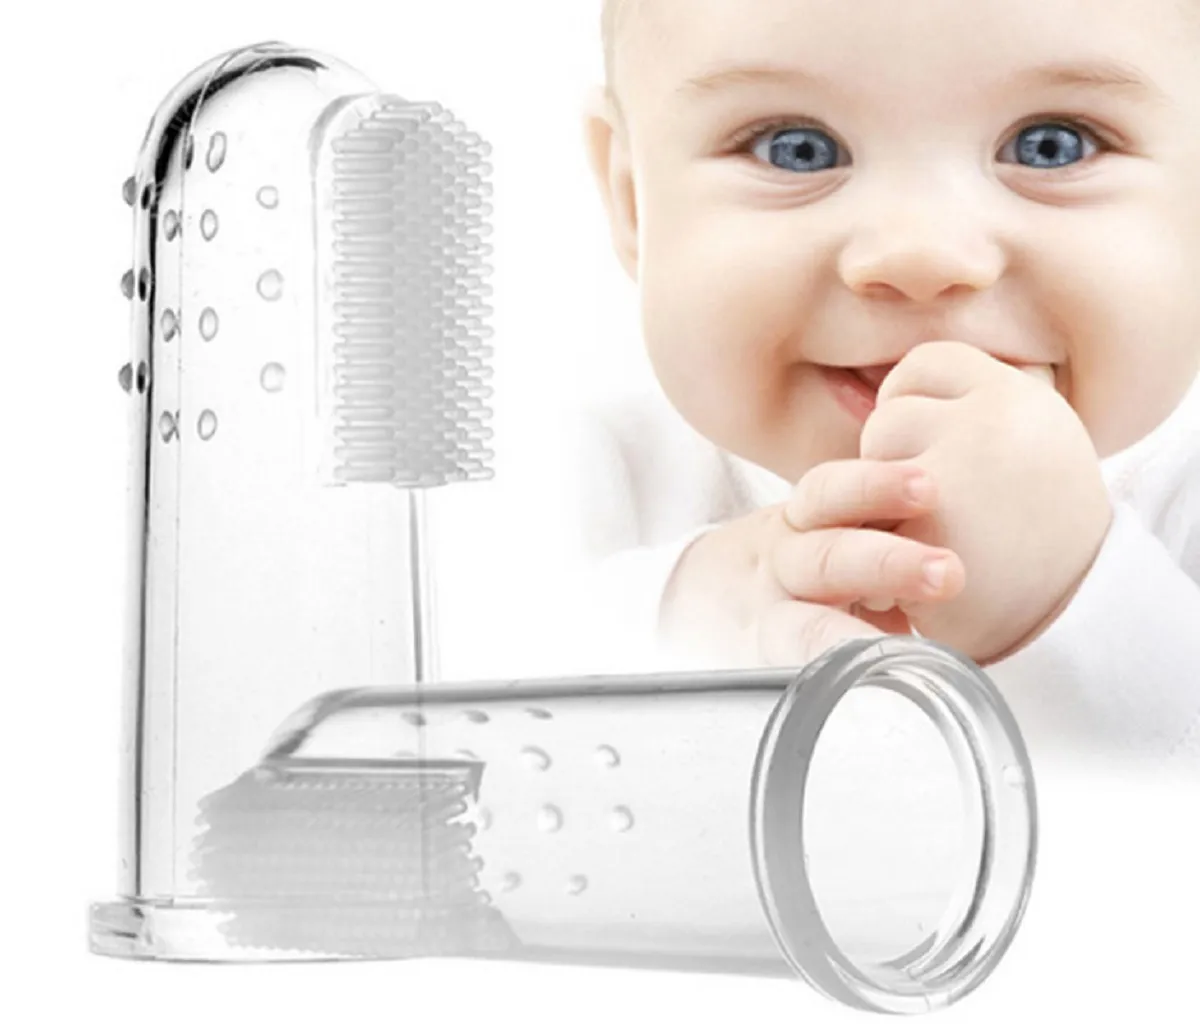 Cepillo de dientes para bebé, cepillo de dientes de silicona de grado alimenticio para bebés pequeños, mordedor de cepillo de dientes y masajeador bucal